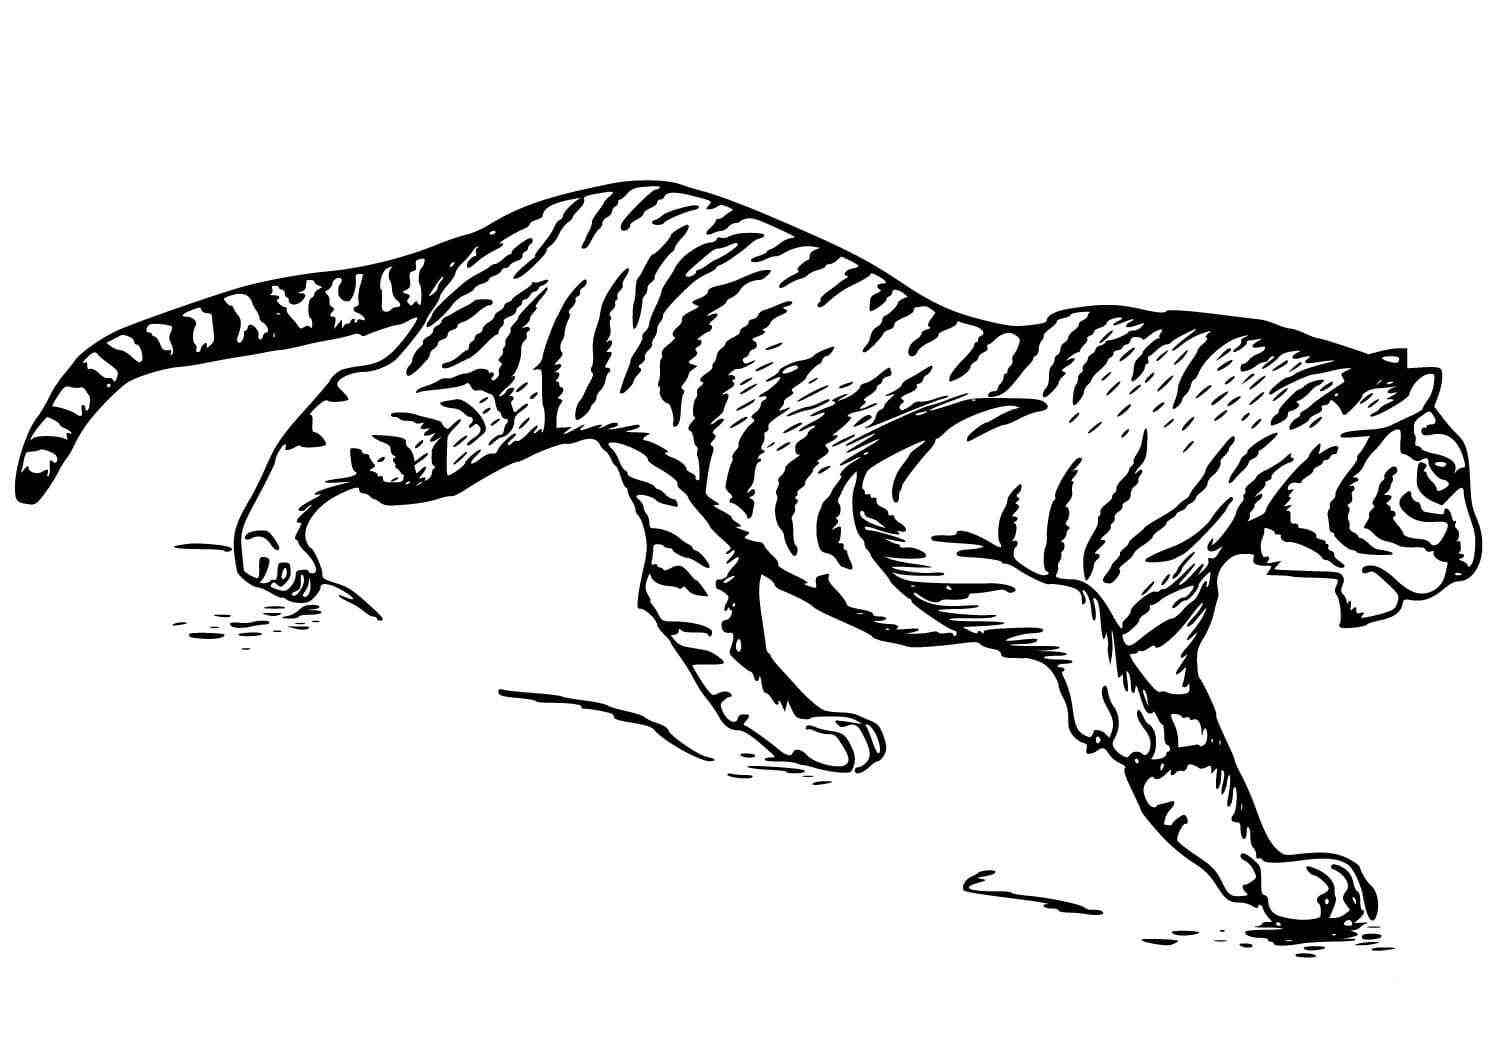 Der Südchinesische Tiger bereitet sich darauf vor, die Beute des Tigers anzugreifen